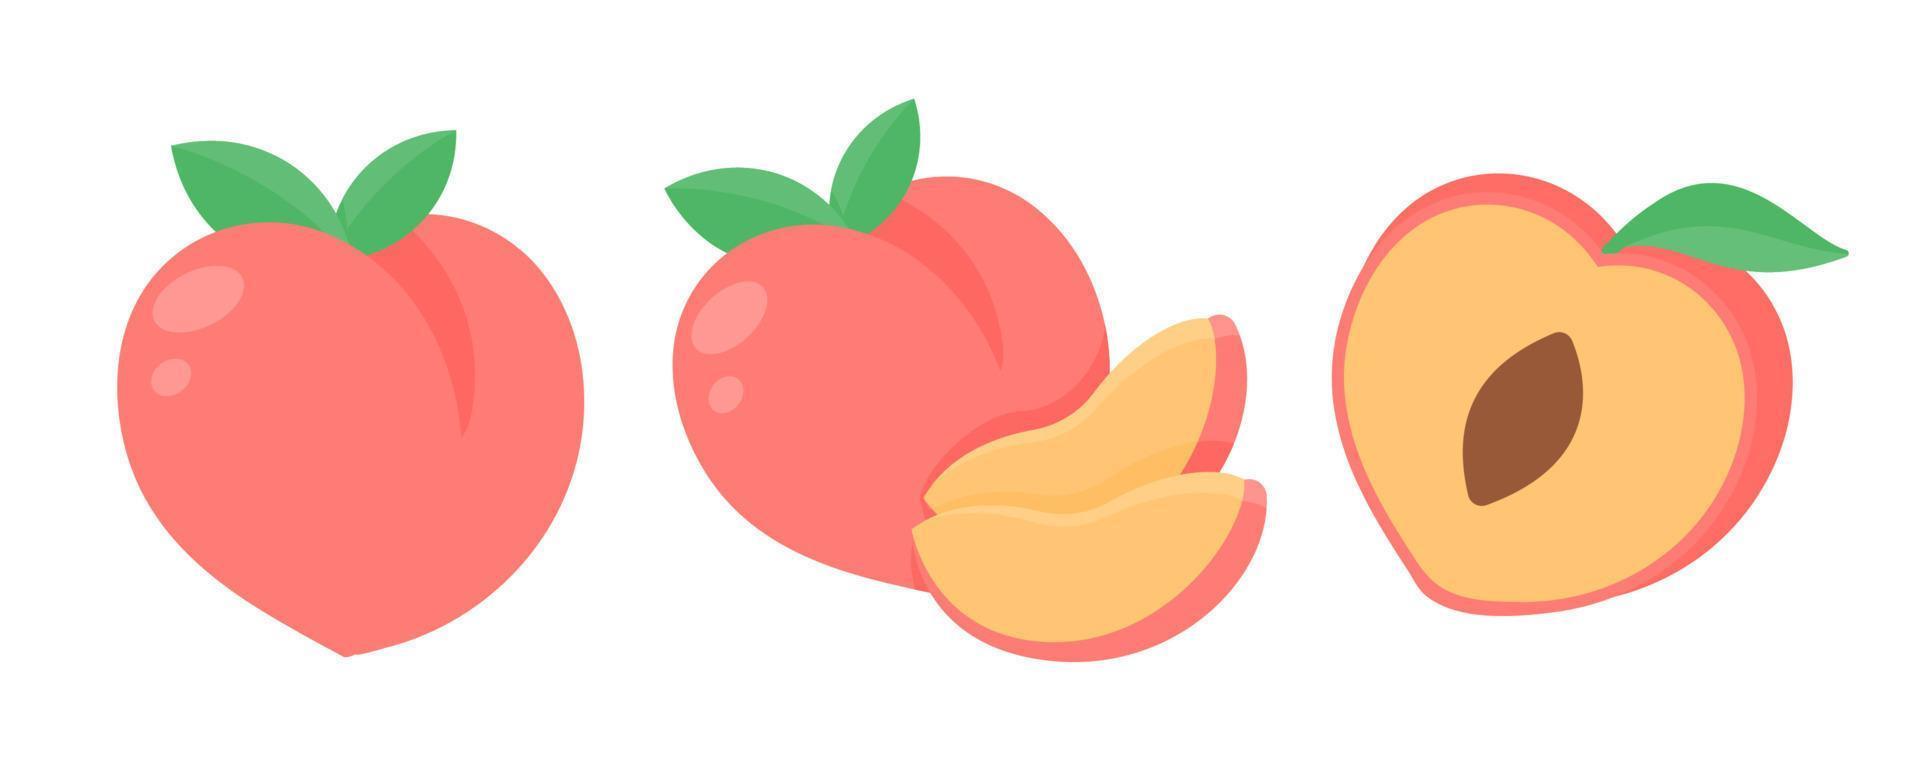 perzik vector. roze hart vormig perzik gezond zoet fruit vector